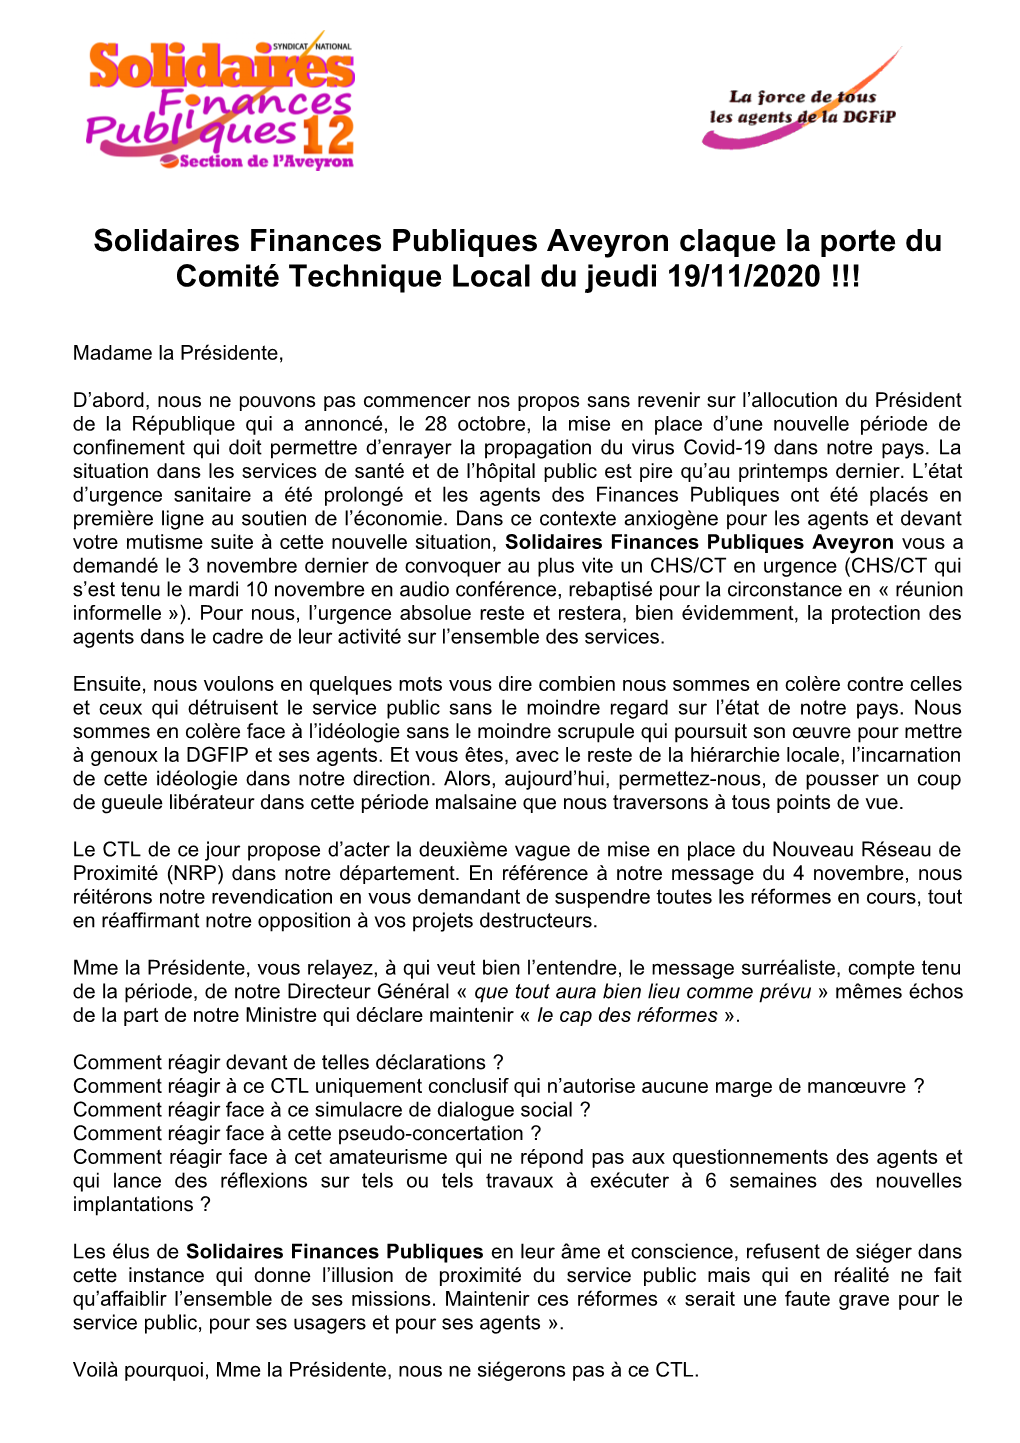 Solidaires Finances Publiques Aveyron Claque La Porte Du Comité Technique Local Du Jeudi 19/11/2020 !!!